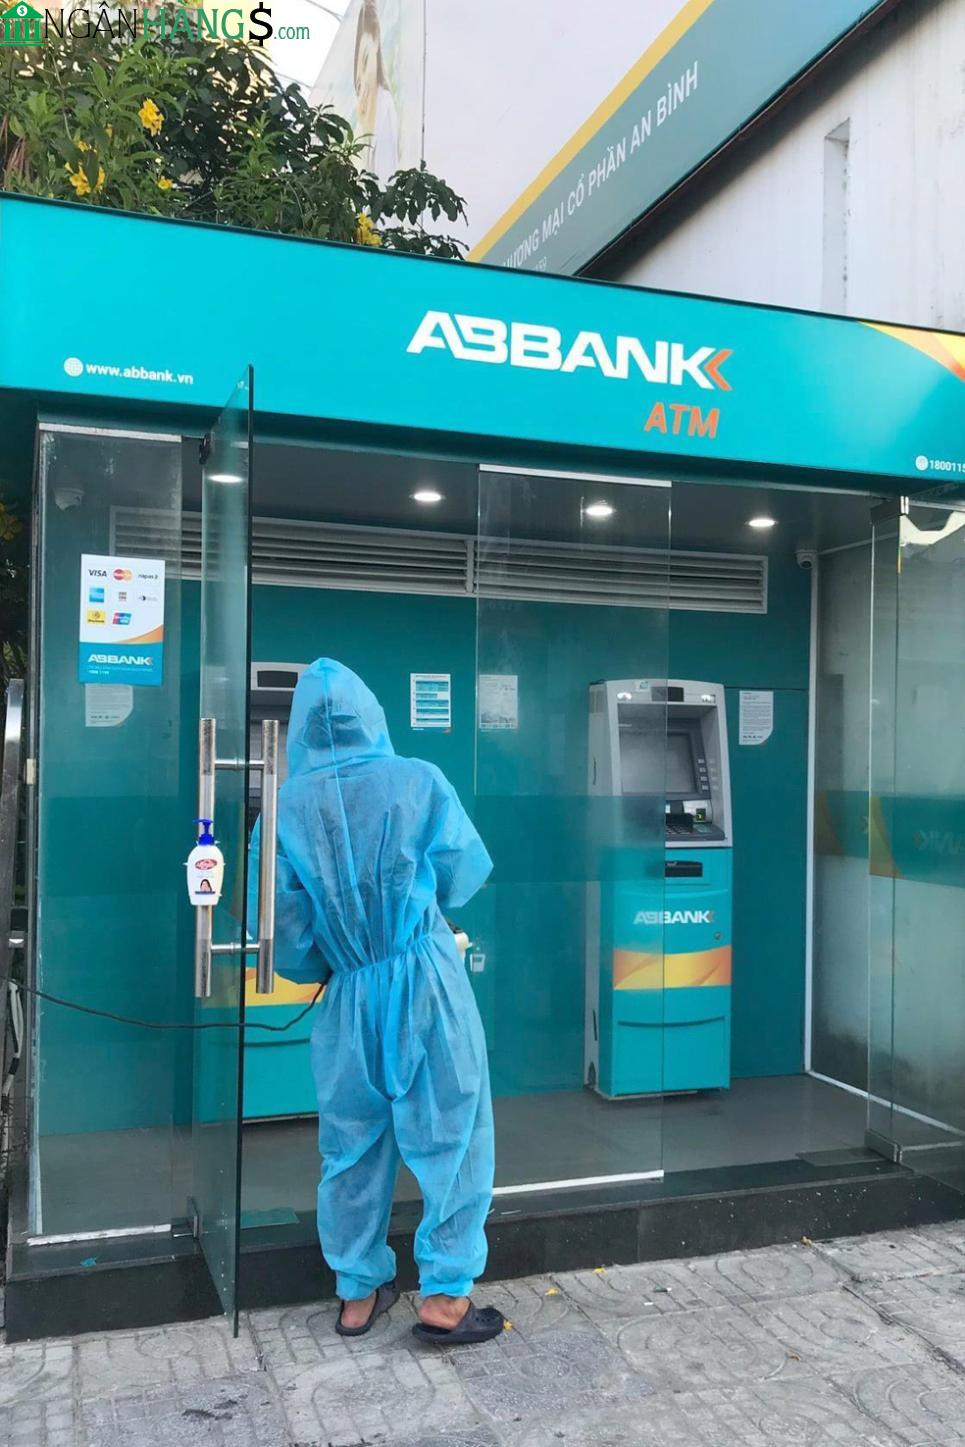 Ảnh Cây ATM ngân hàng An Bình ABBank 361 B Mê Linh 1